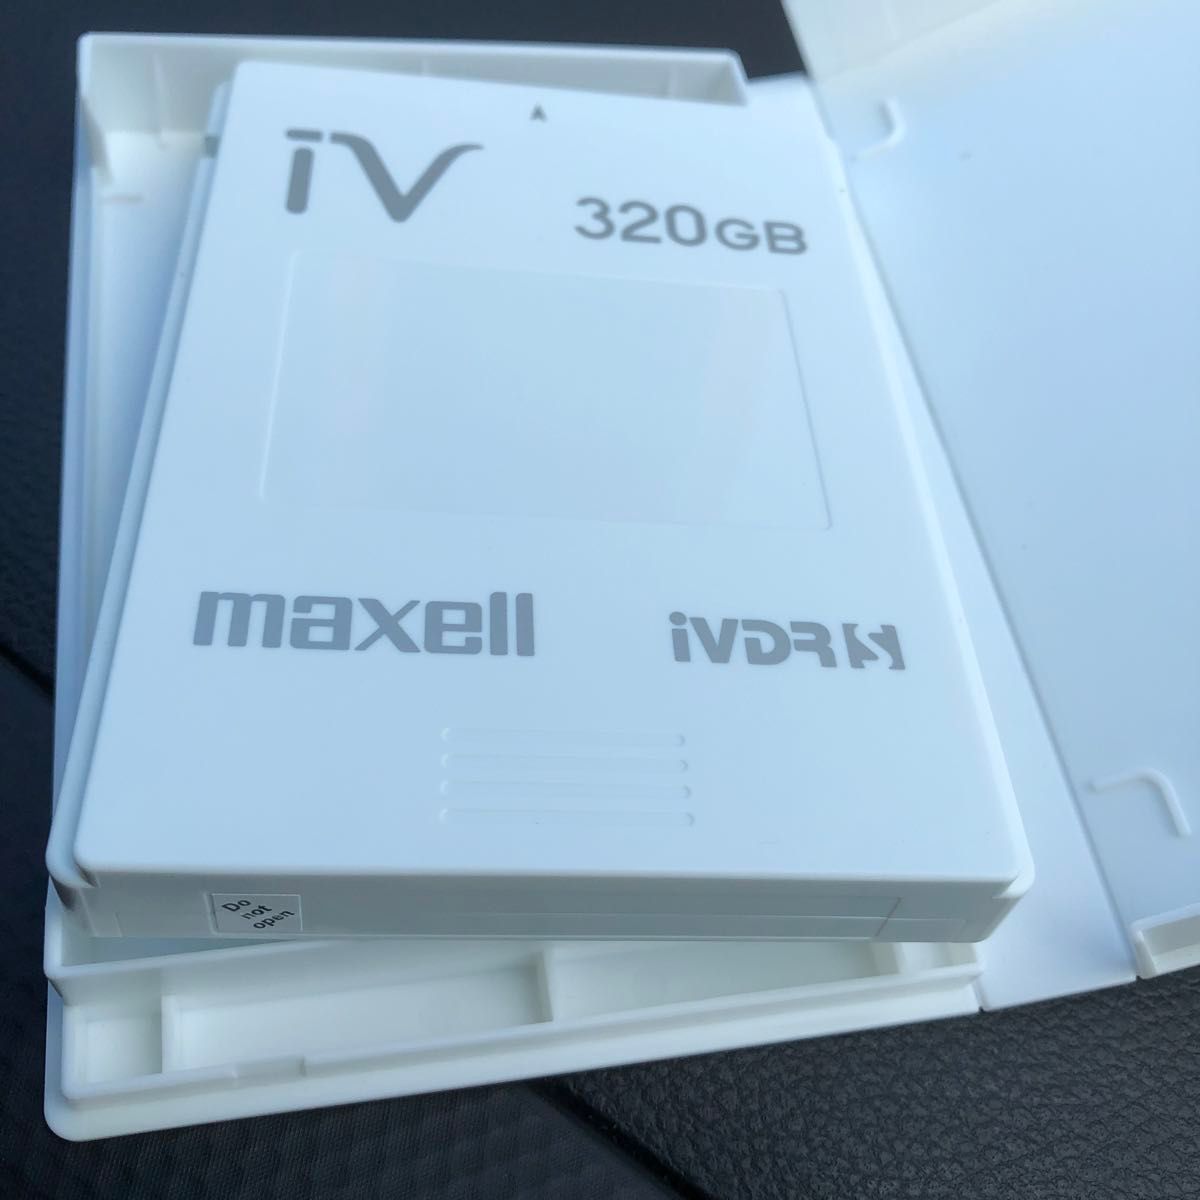 maxell  ivdrｰs 320GBカセットハードディスク